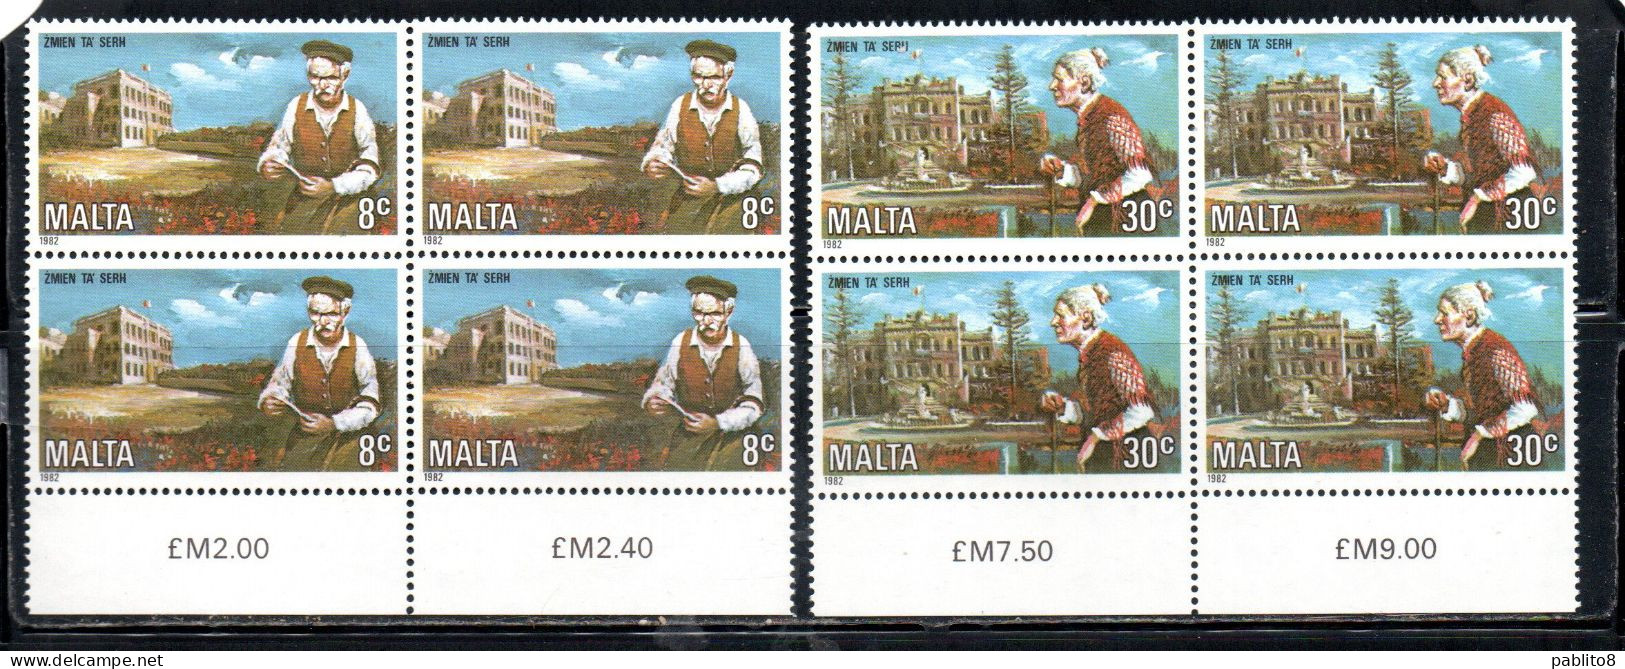 MALTA 1982 MEN AND HOME CARE OF THE ELDERLY YEAR ANNO DELLA CURA PER GLI ANZIANI COMPLETE SET SERIE COMPLETA BLOCK MNH - Malte